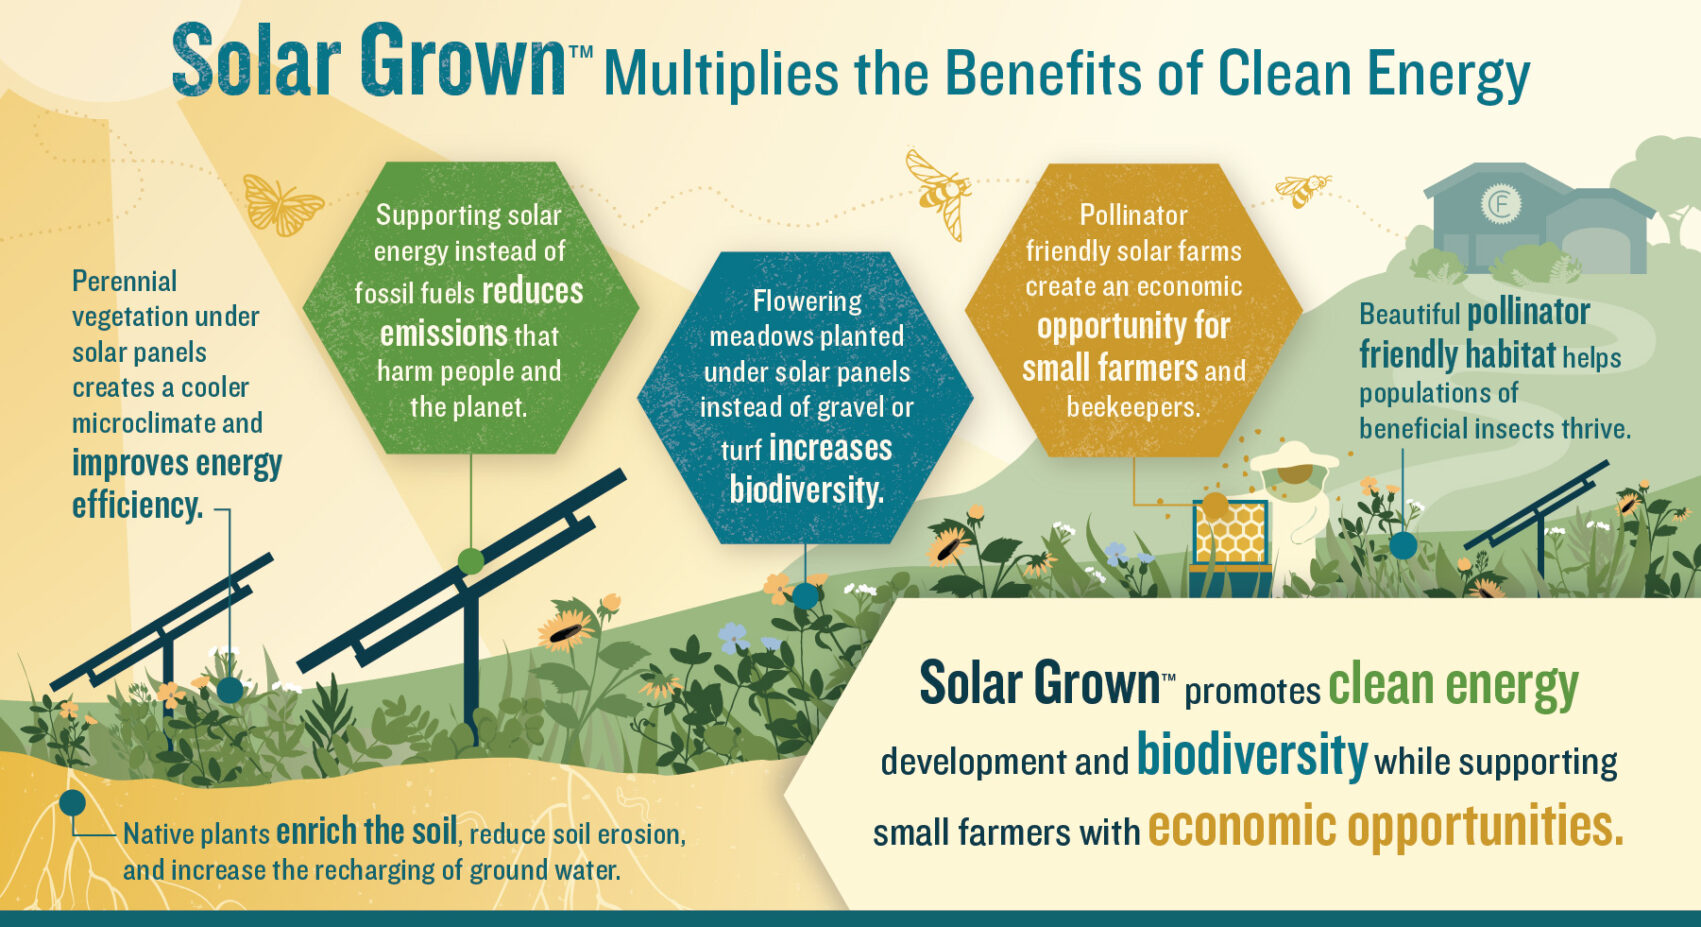 Benefits of Solar Grown